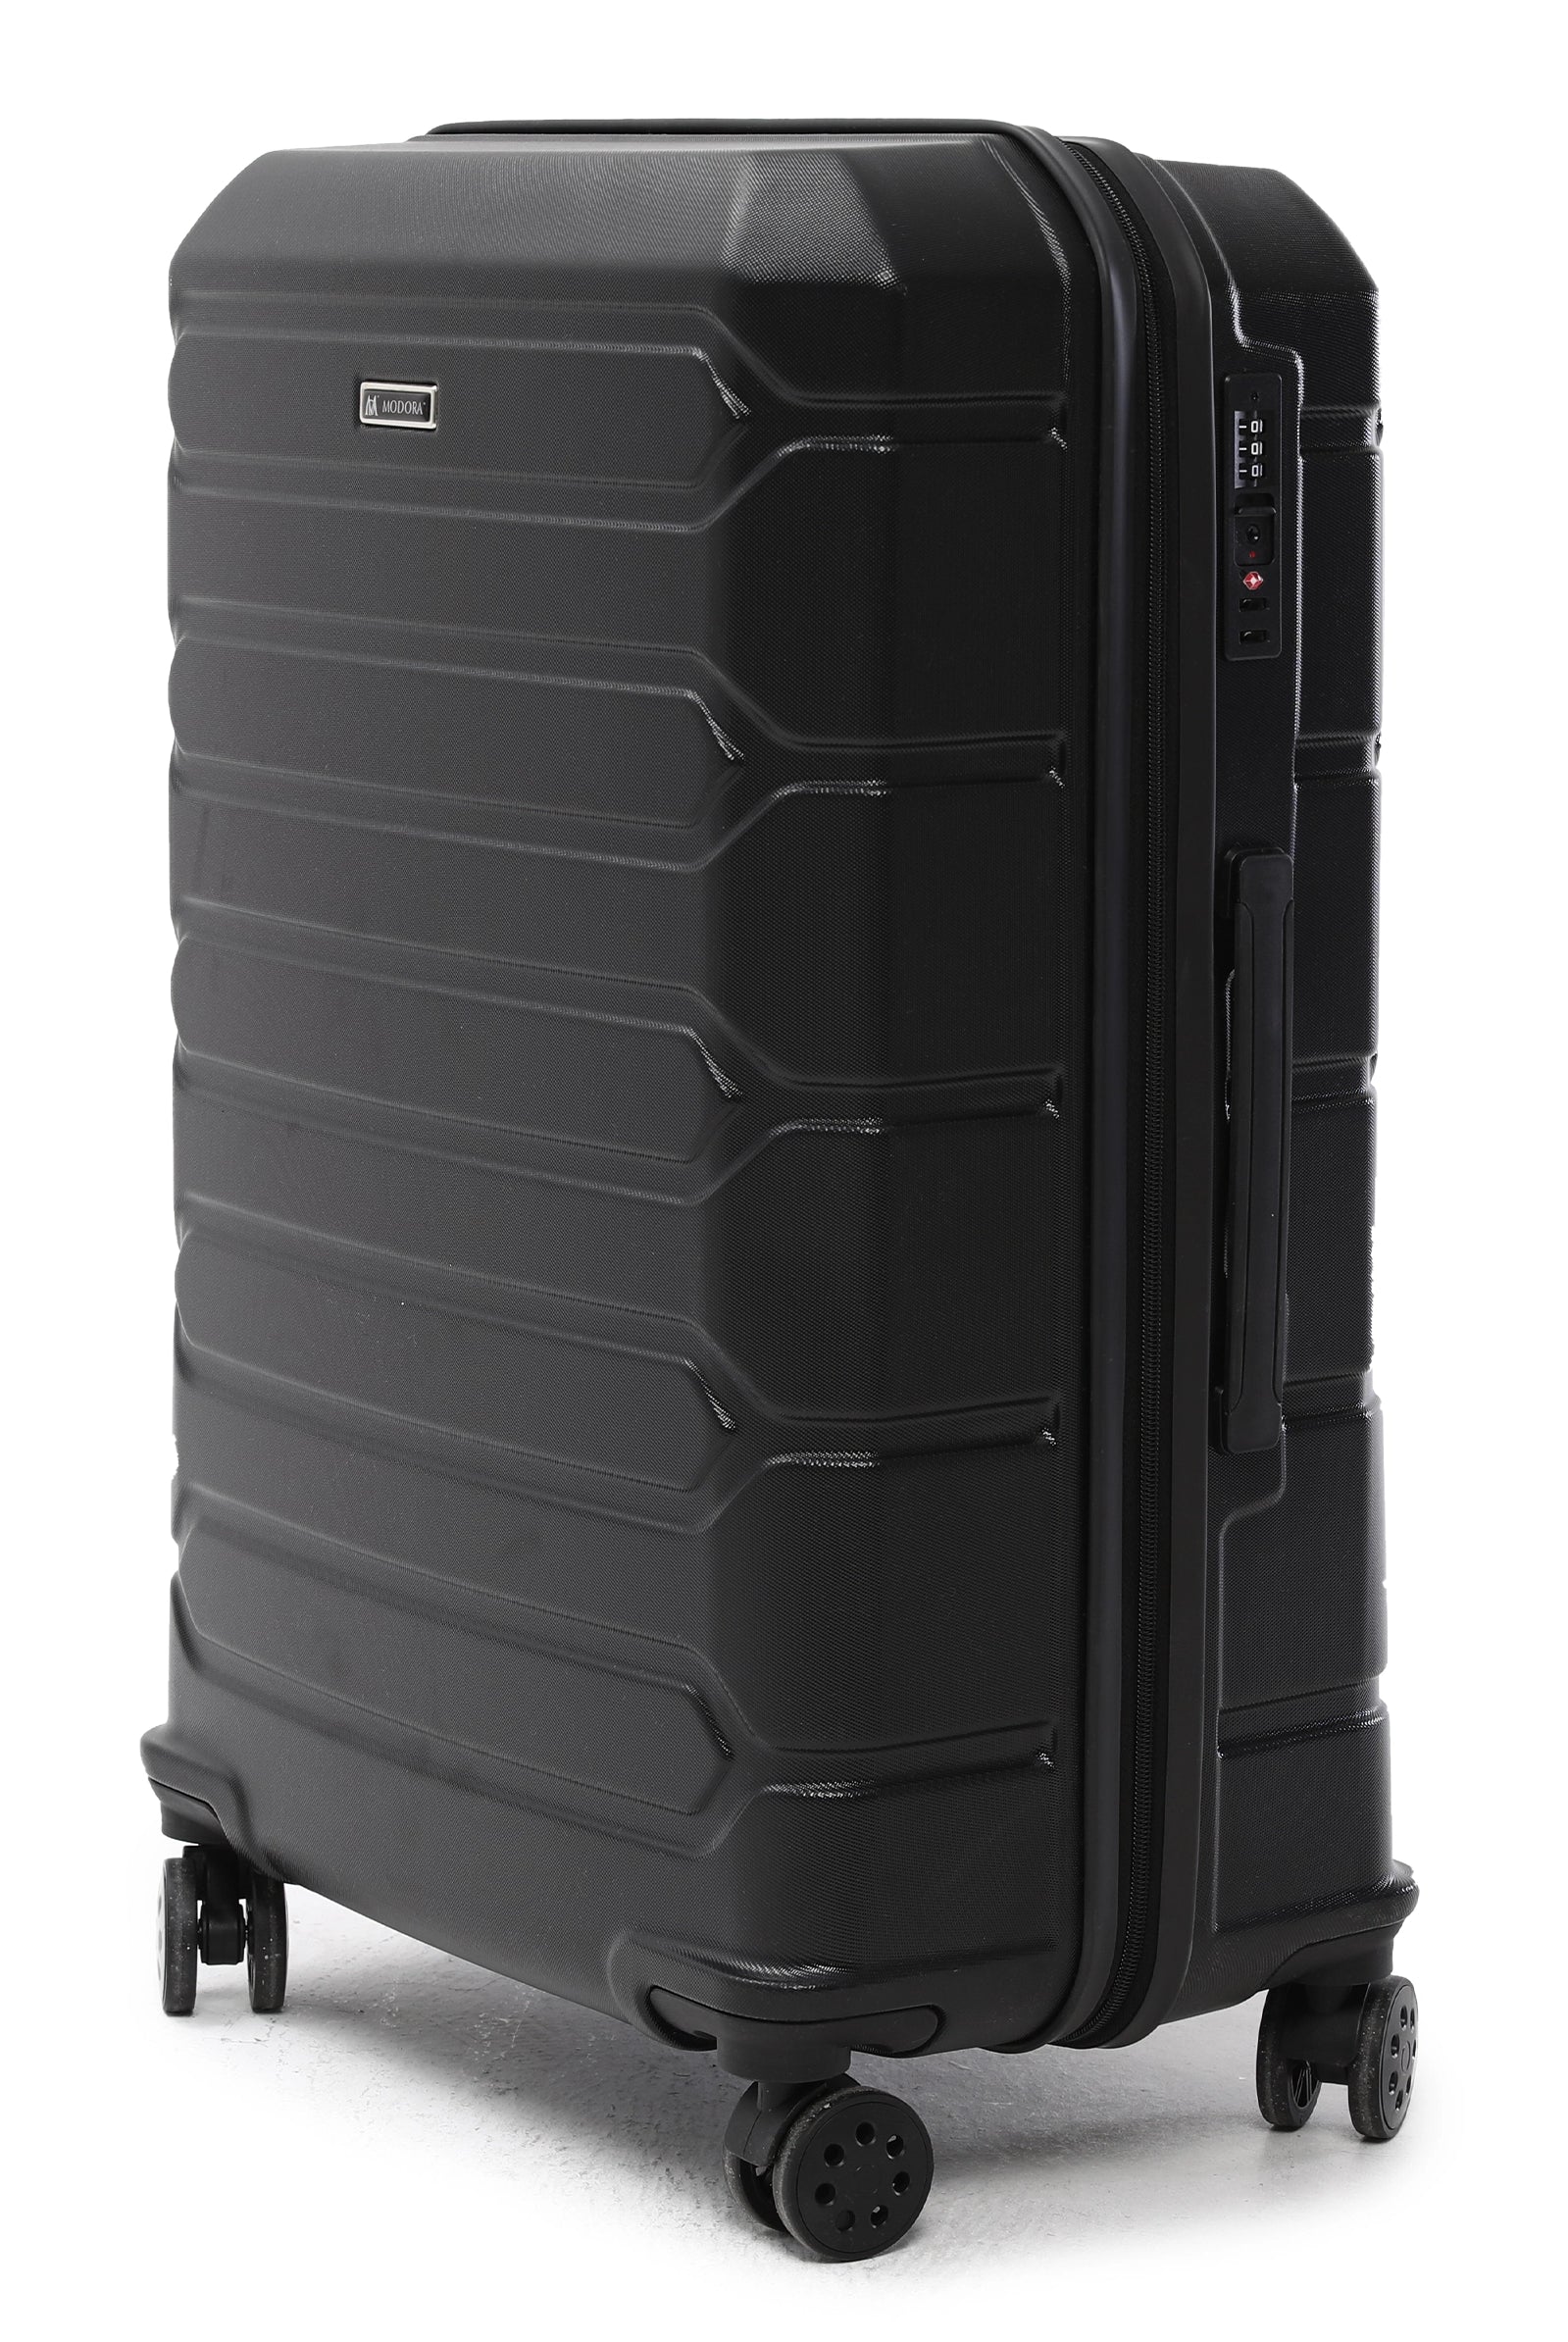 Large black suitcase